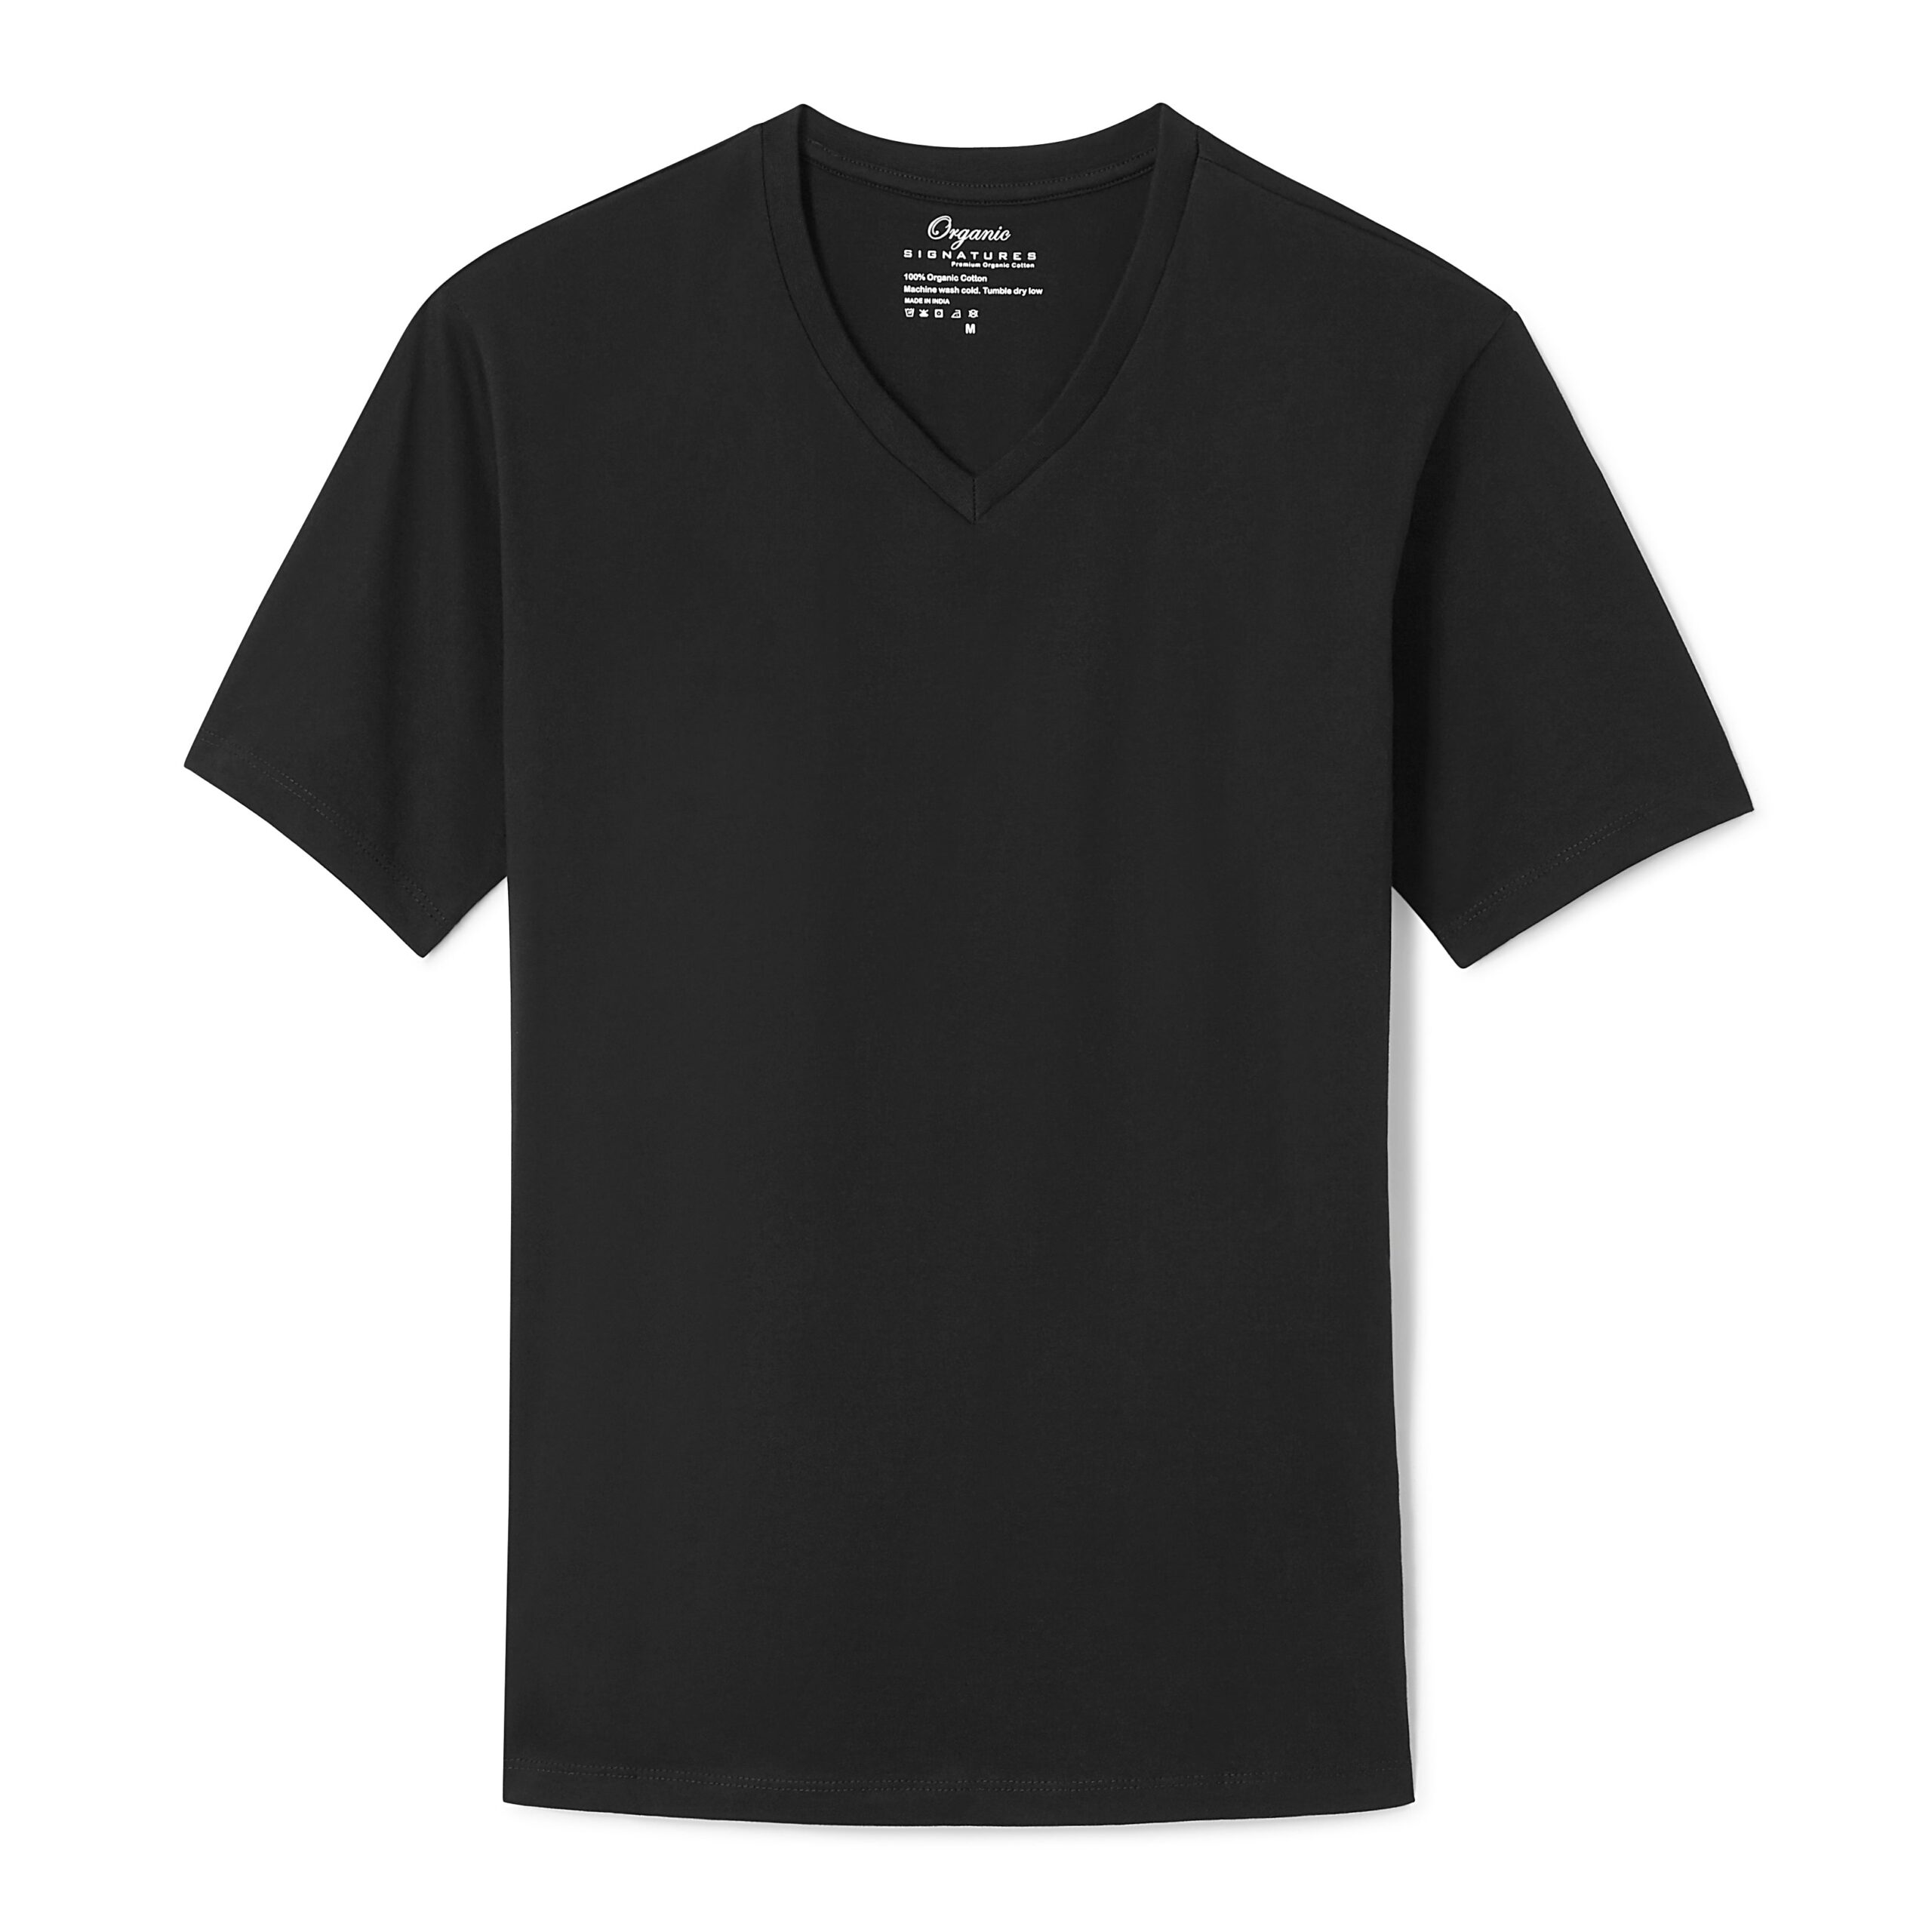 Black Cotton T-Shirt for Men &#8211; V-Neck Short Sleeve